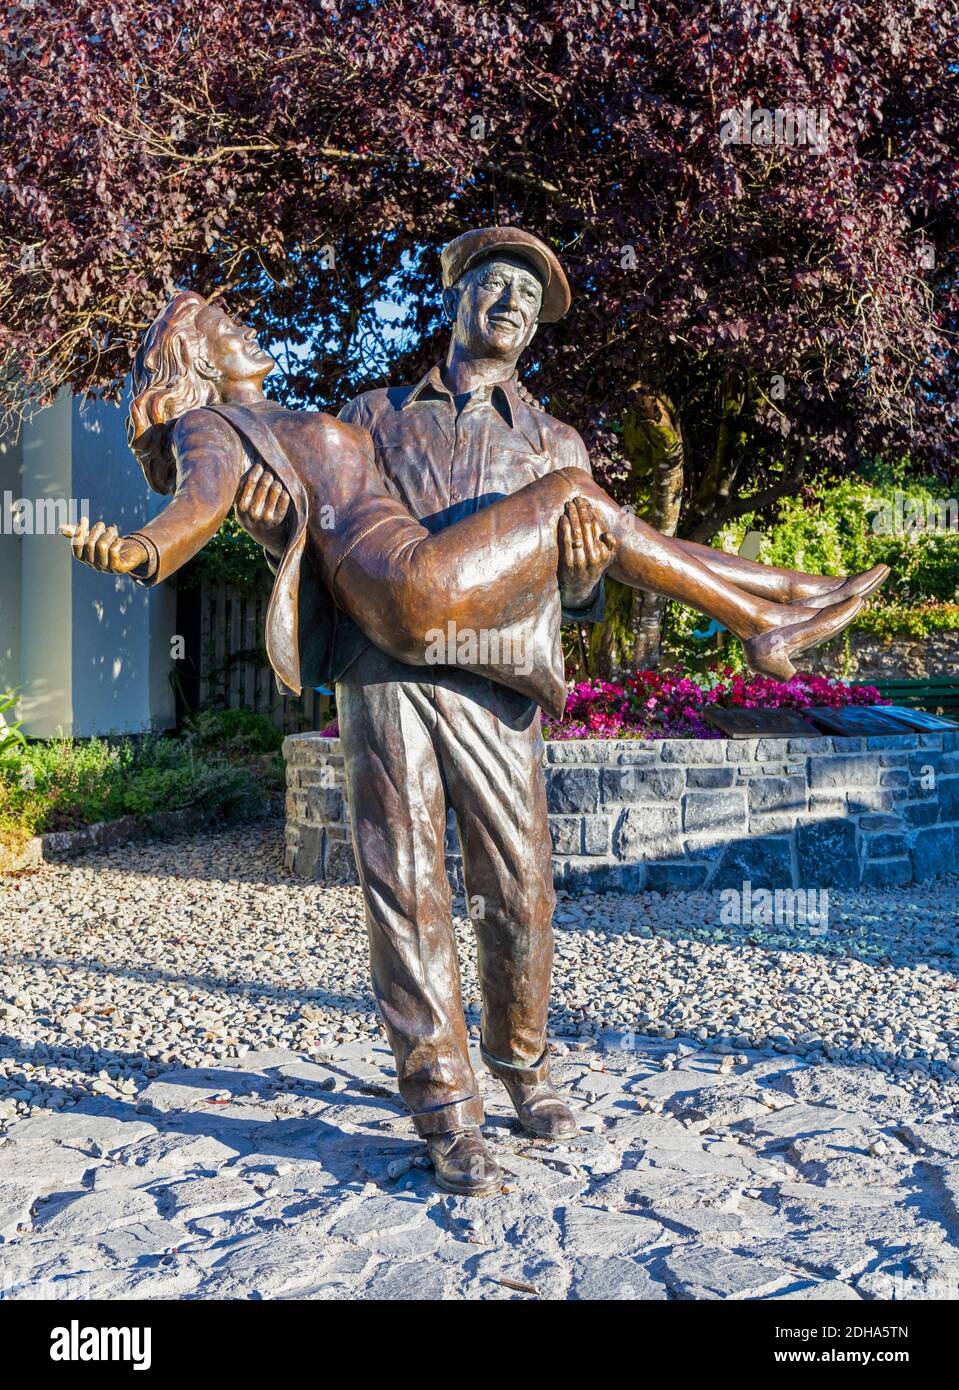 L'uomo tranquillo statua, Cong, County Mayo, Connemara, Repubblica di Irlanda. Eire. La statua è basato sulla versione teatrale poster del film e s Foto Stock